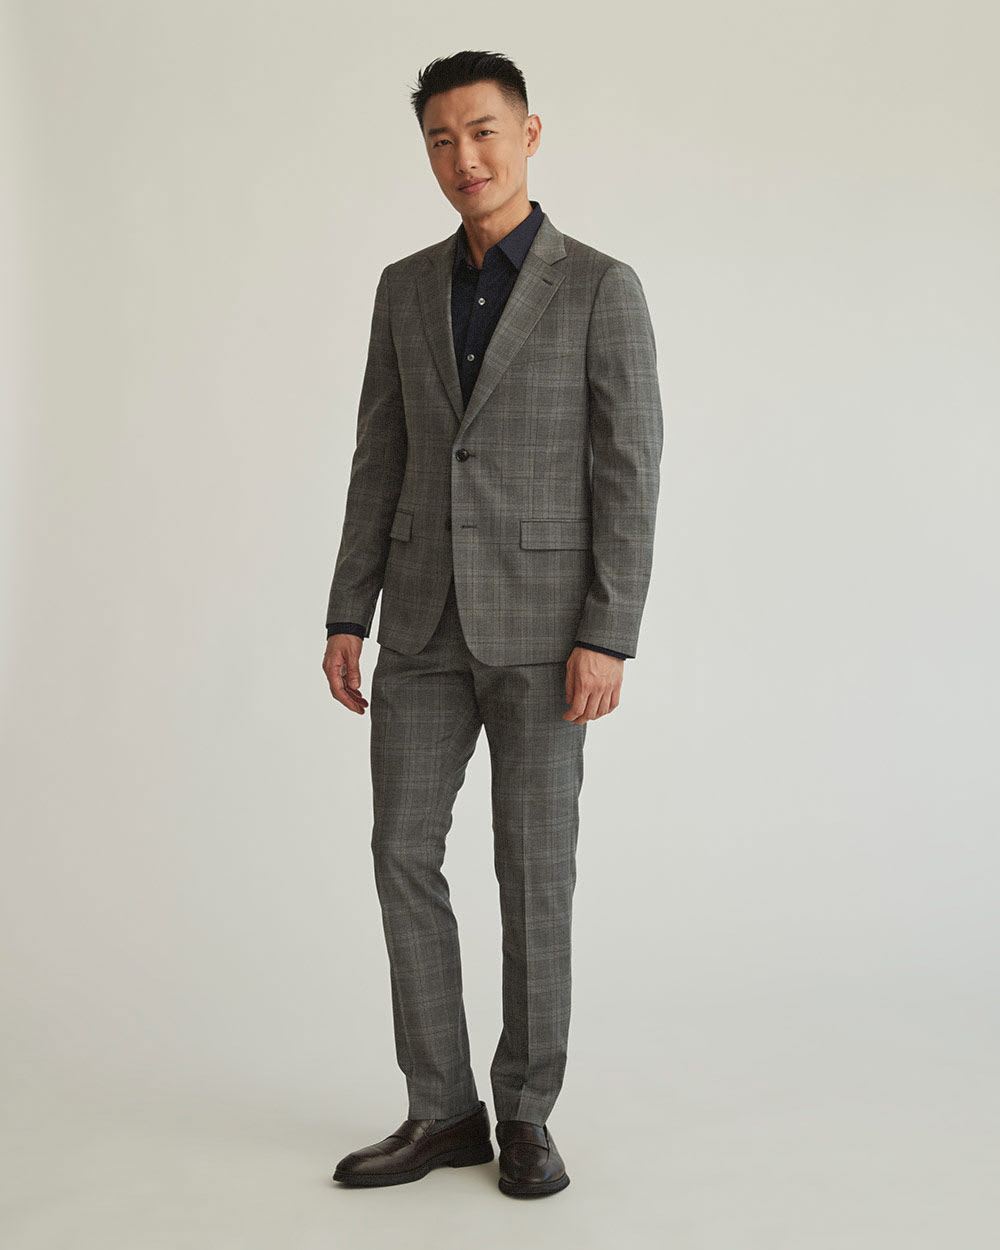 Subtle Grey Check Suit Blazer